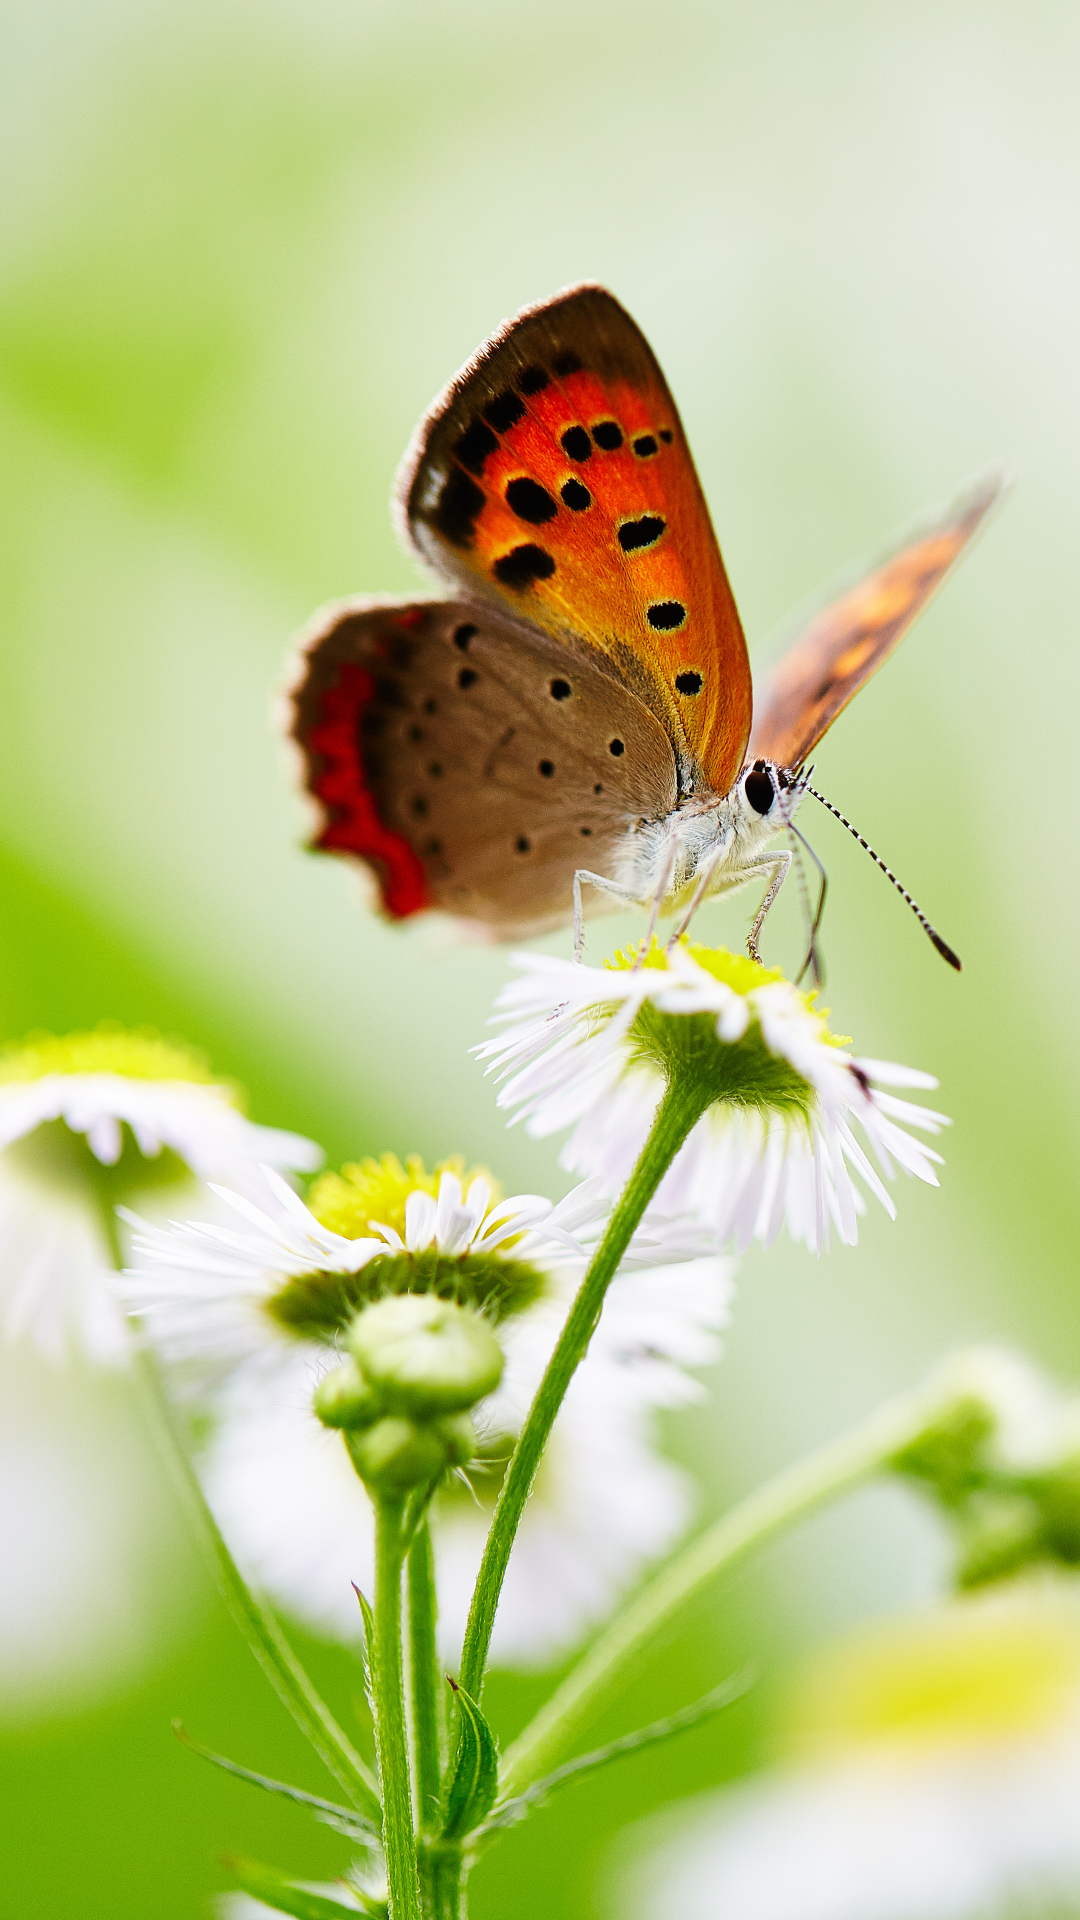 Descarga gratuita de fondo de pantalla para móvil de Animales, Flor, Macro, Insecto, Mariposa, Flor Blanca, Macrofotografía.